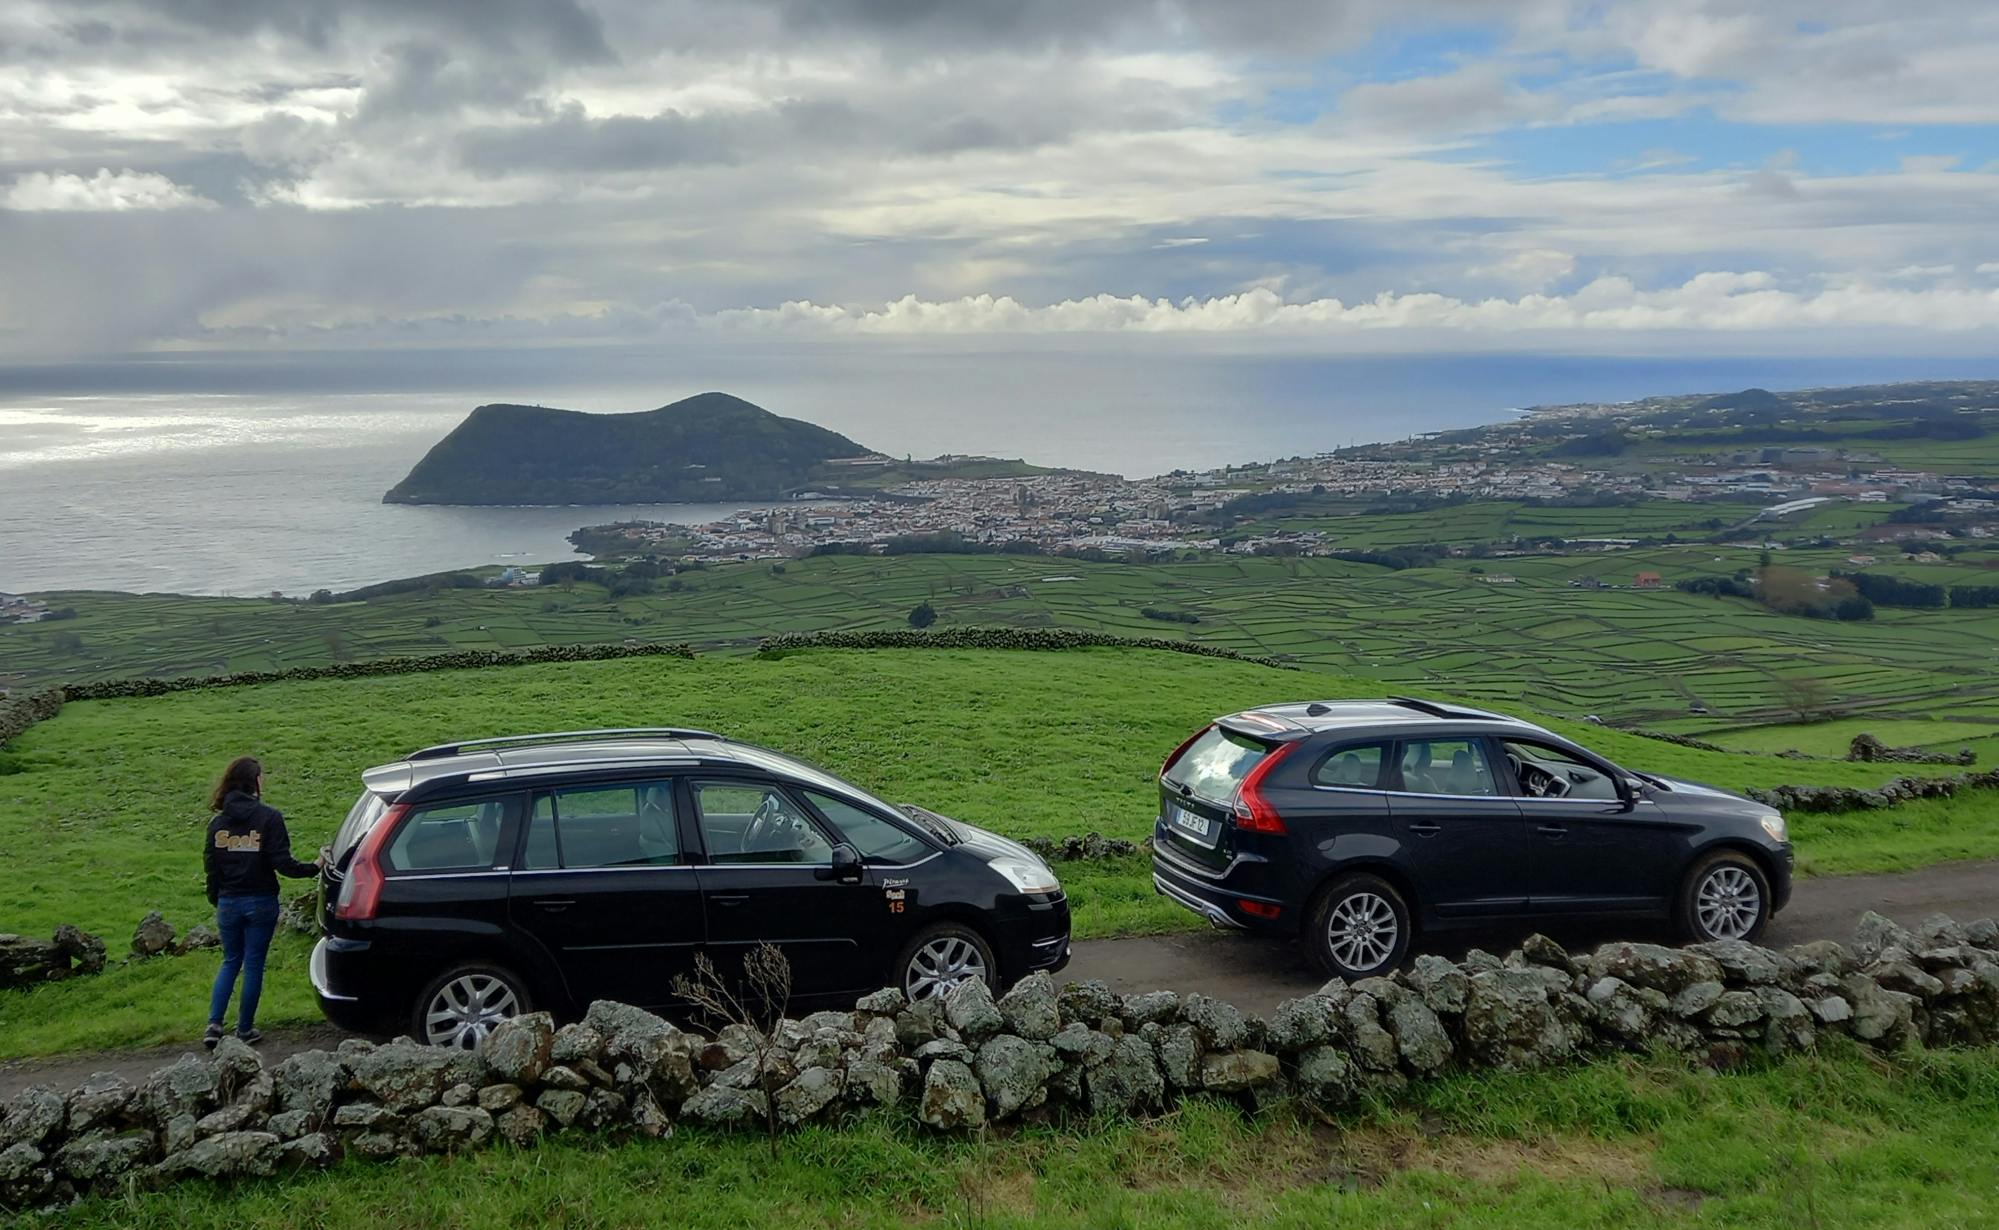 Excursión de día completo a la isla Terceira